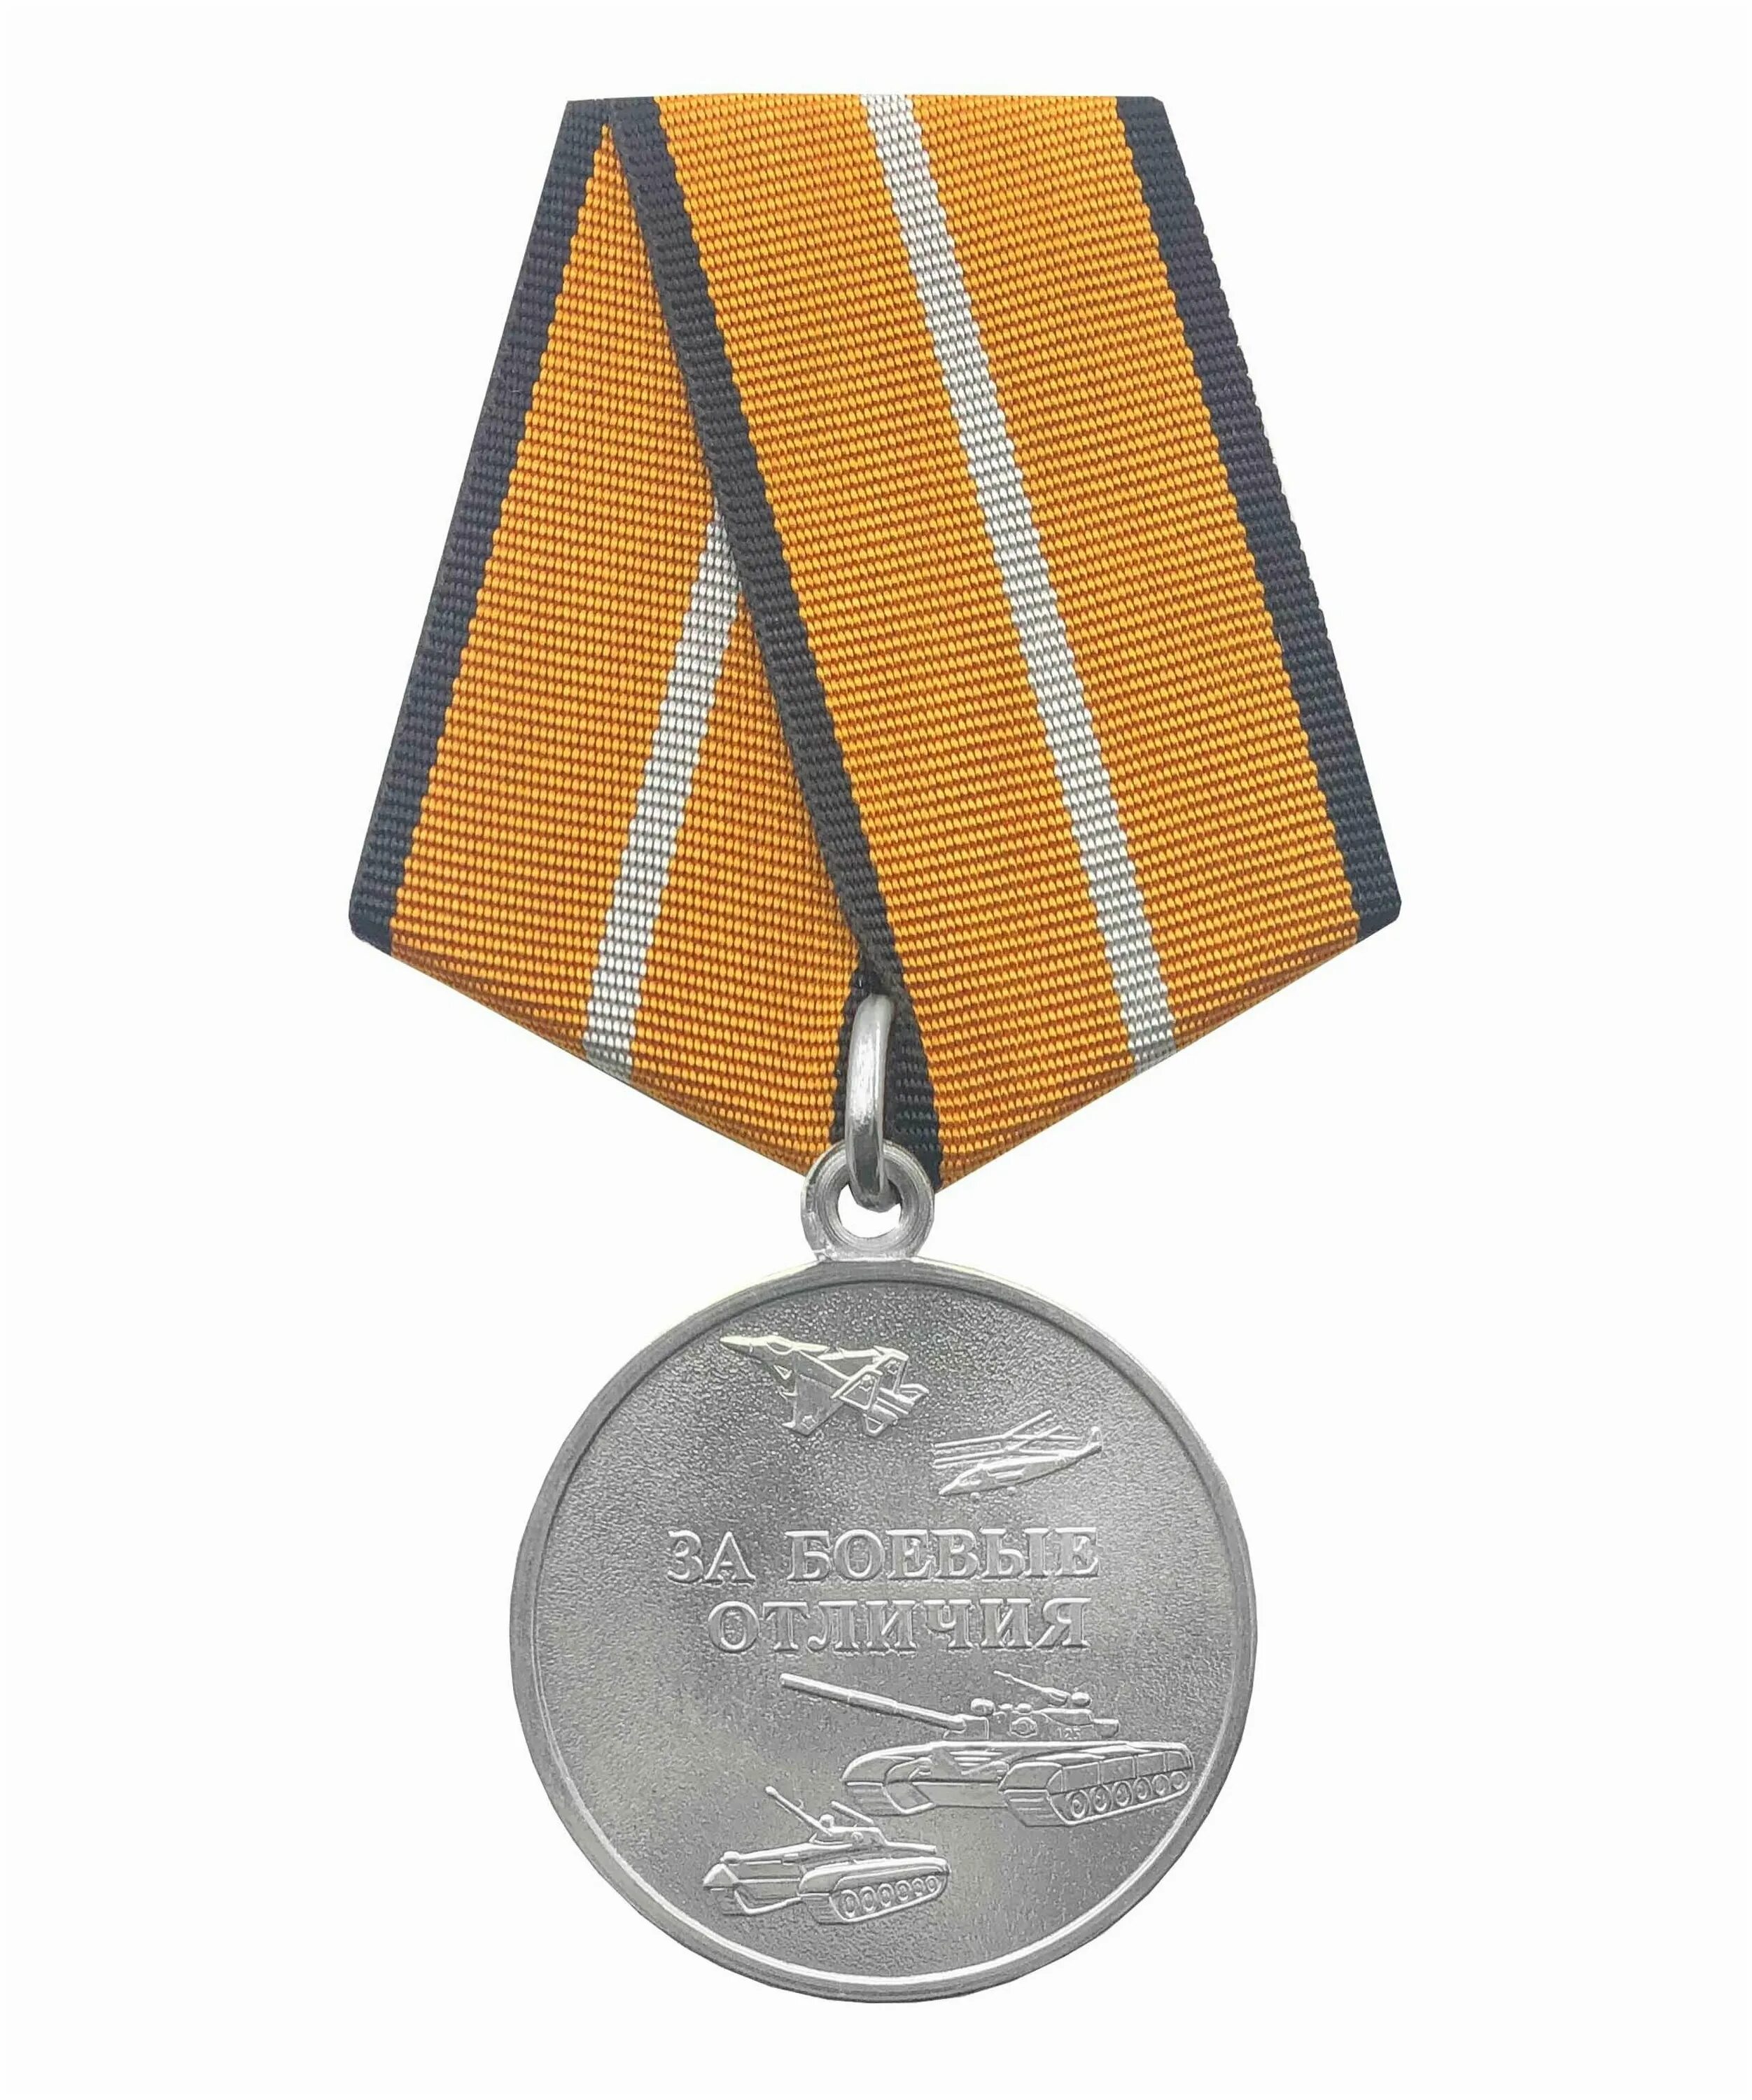 Медаль за боевые отличия что дает. Медаль за боевые отличия. Медаль за боевые отличия Министерства обороны. Медаль за боевые отличия МО РФ. Медаль за боевые заслуги Министерства обороны.